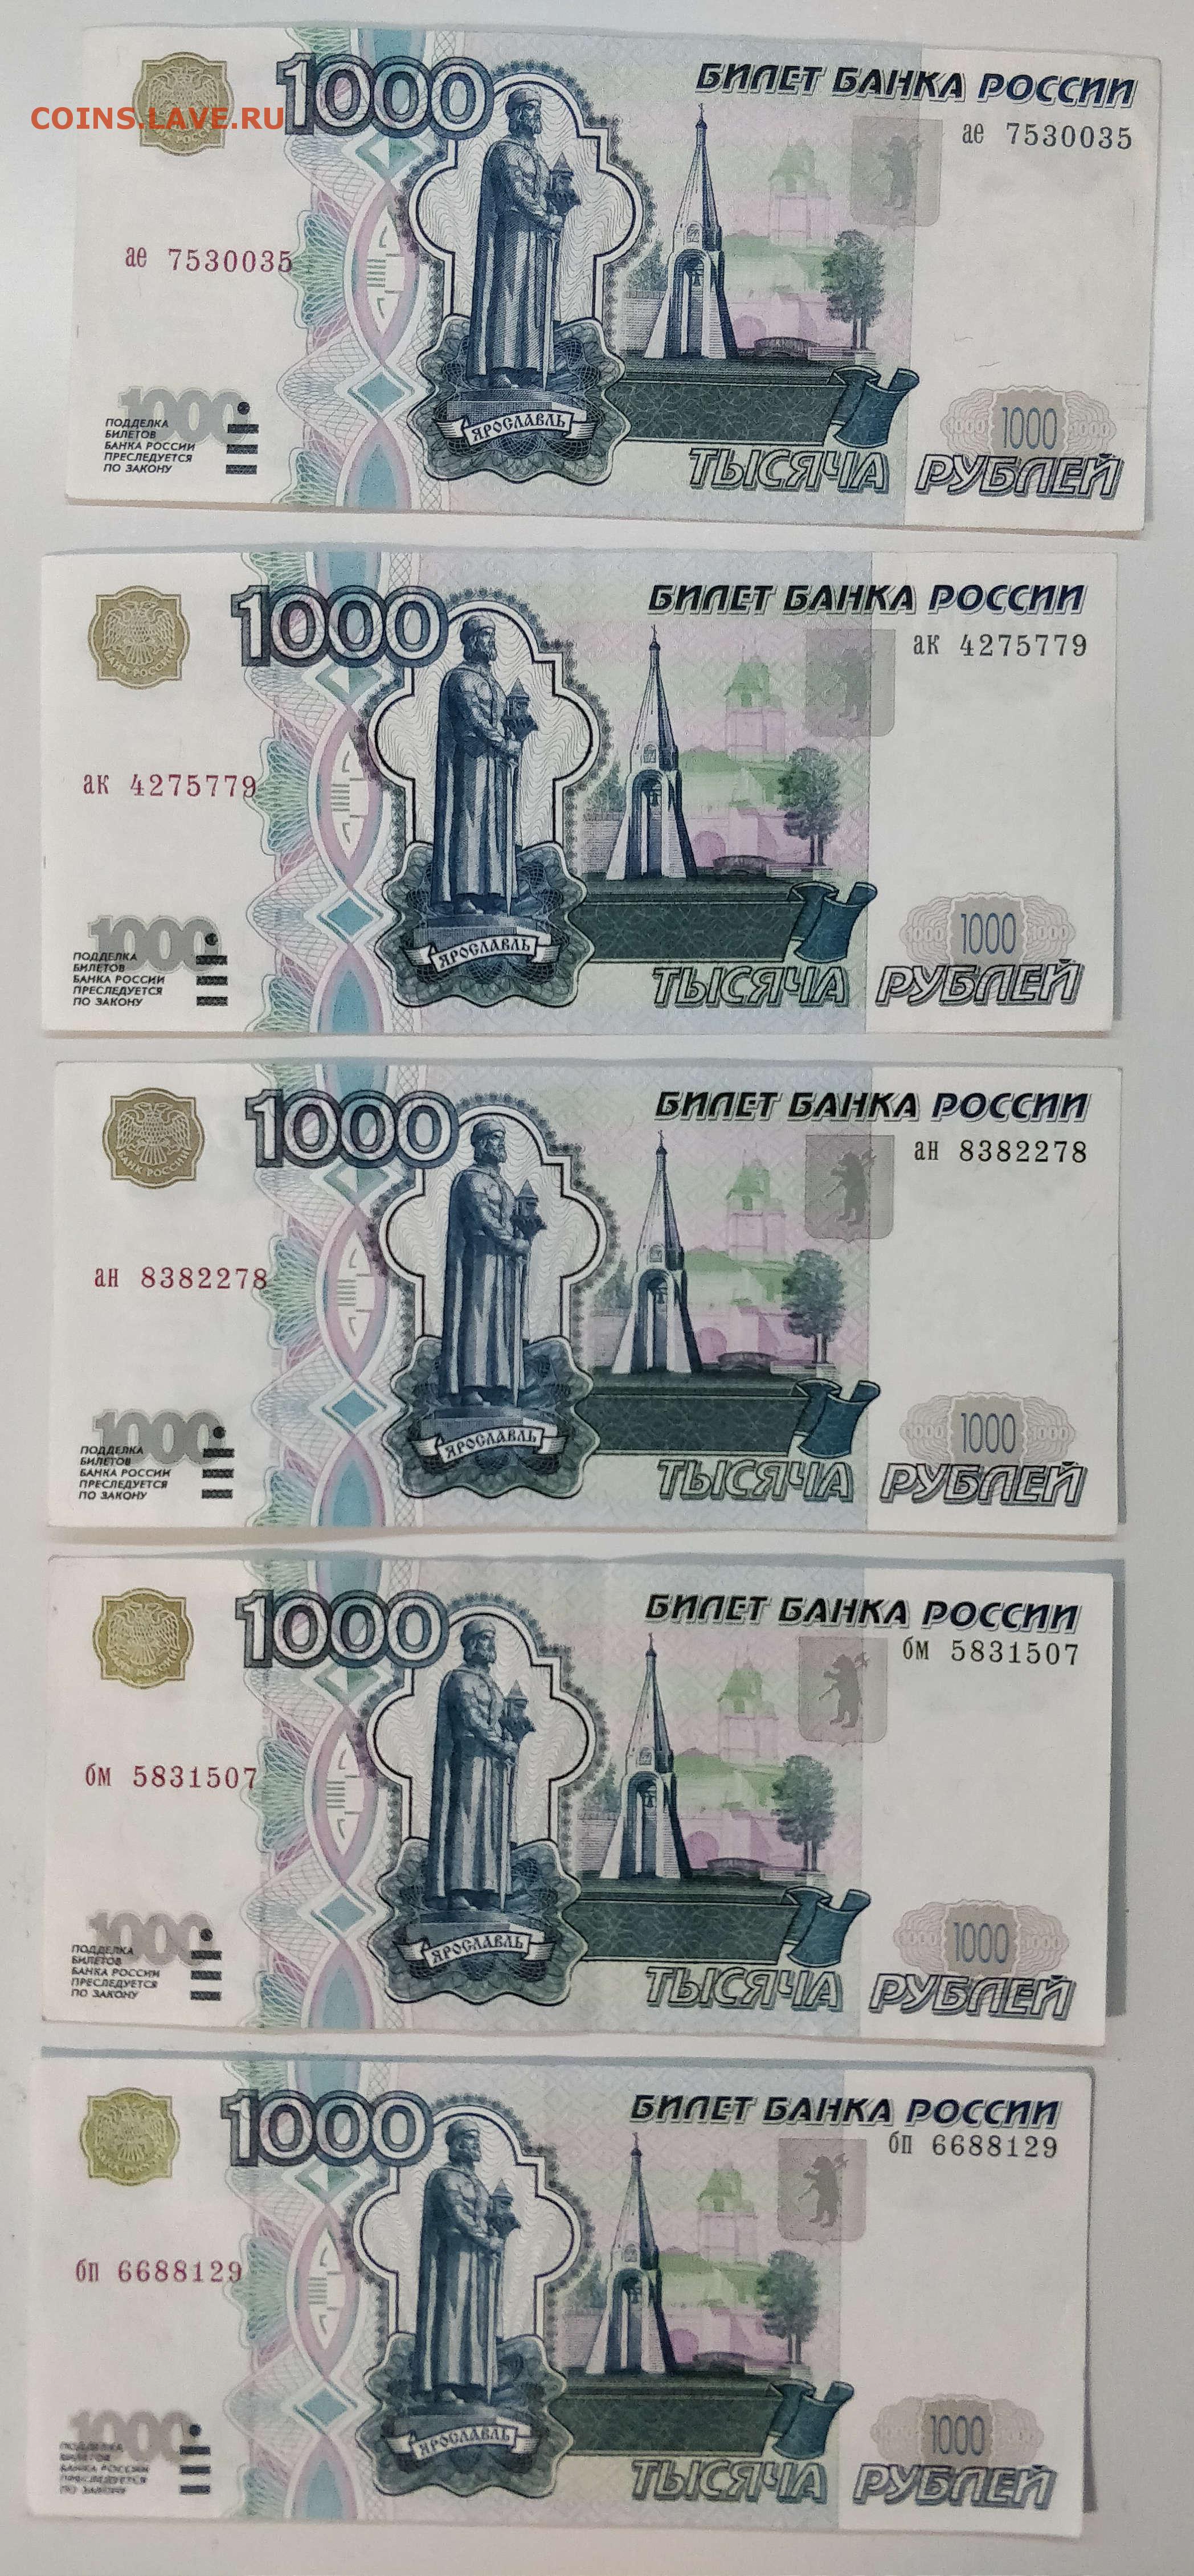 Редкие 1000 рублей. 1000 Рублей образца 1997 года без модификации. 1000 Рублей без модификации. Разновидности 5 тыс без модификации.